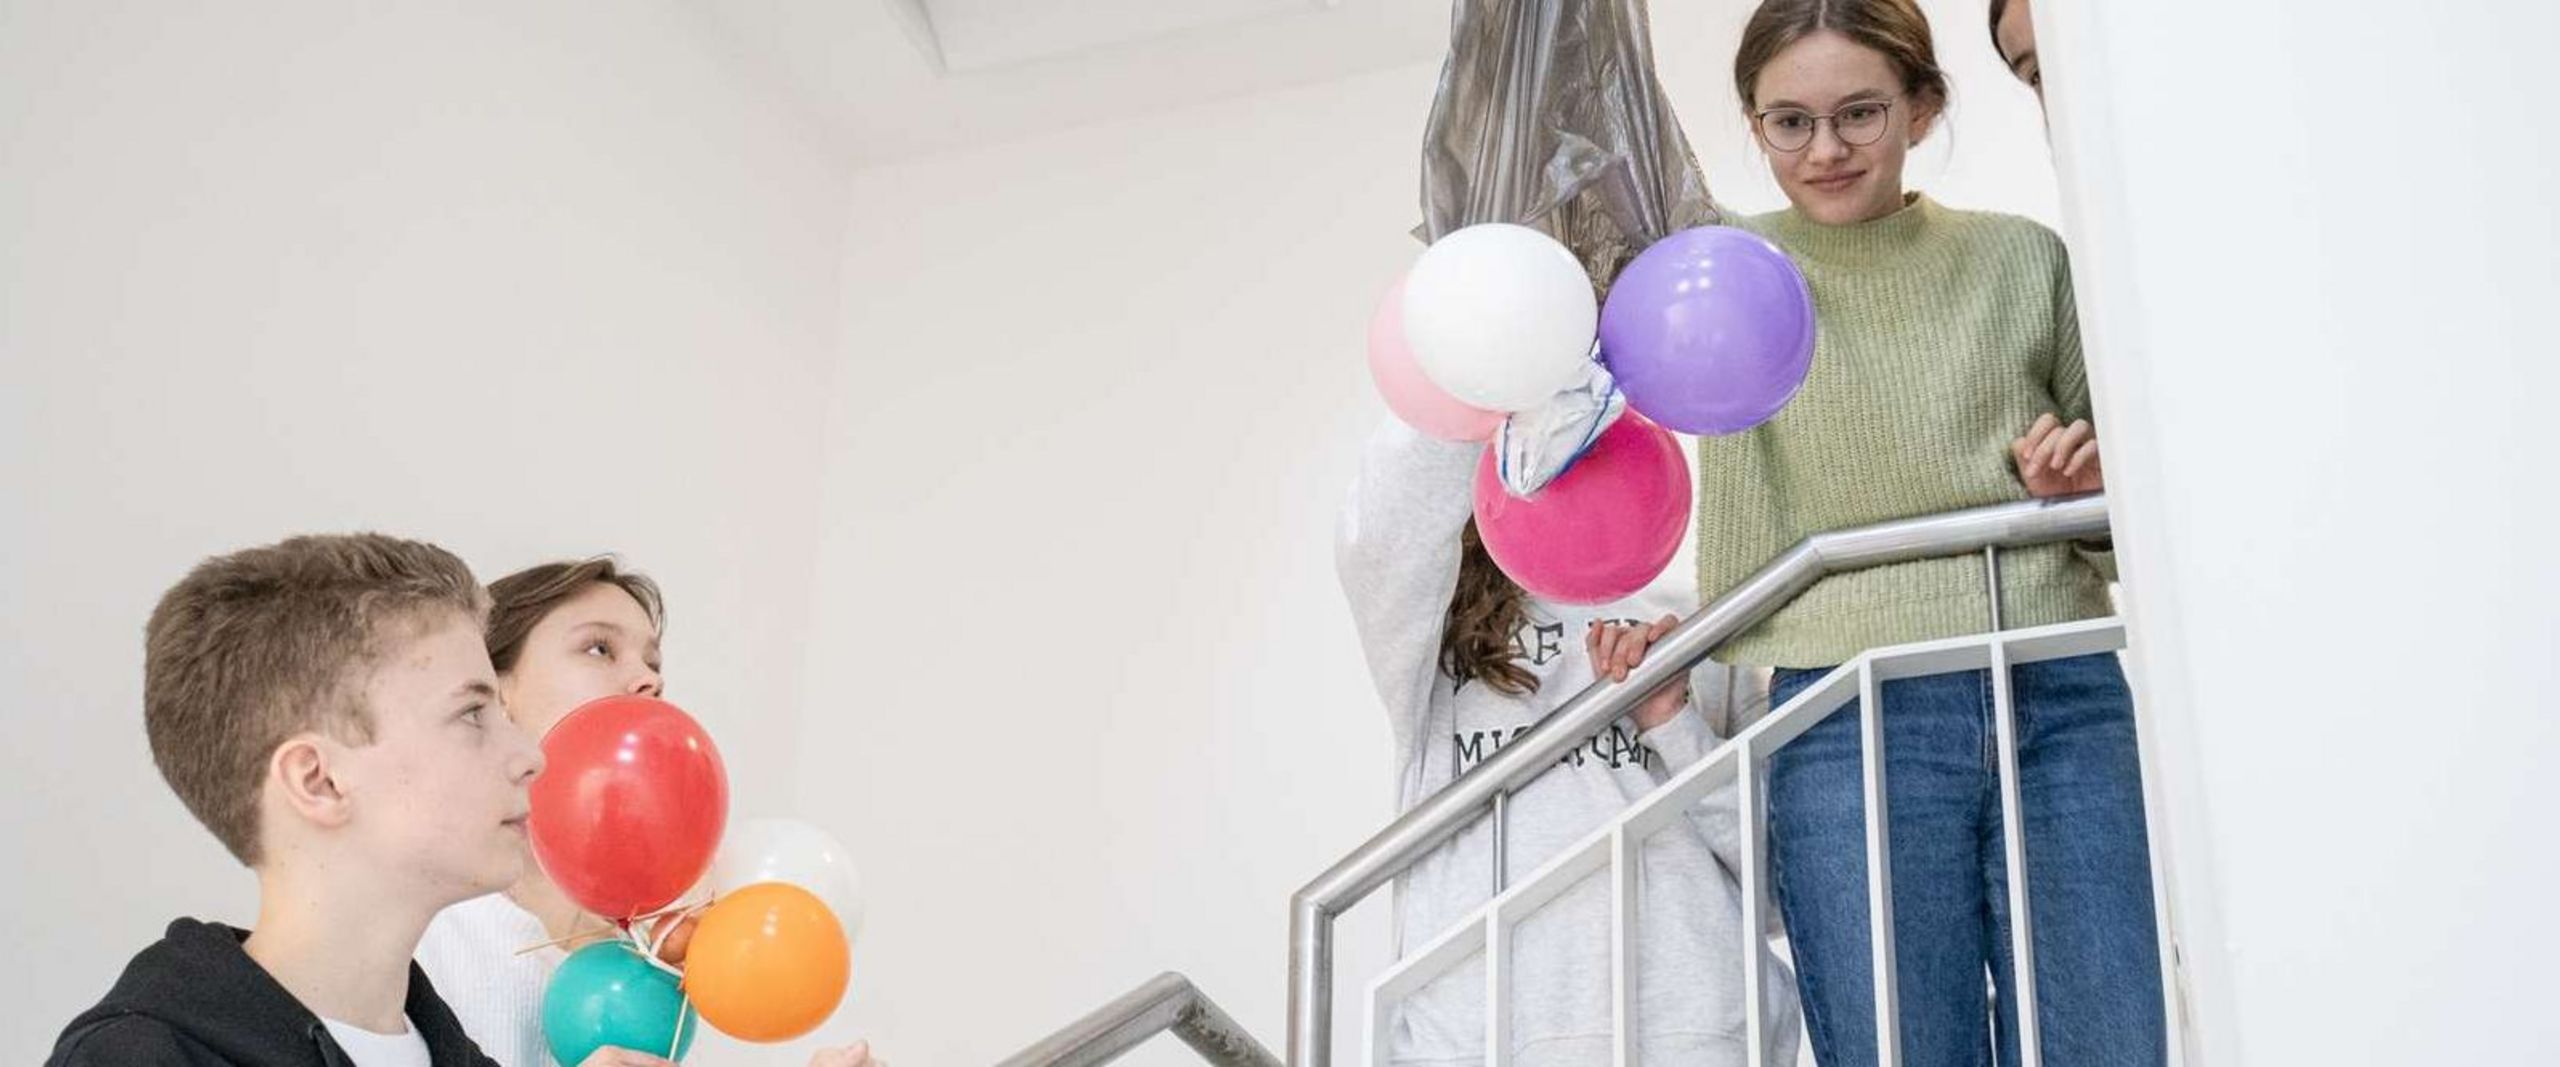 Eine Schülerin hält eine Konstruktion aus Müllbeutel und Luftballons rund um ein rohes Ei in die Luft, bereit, diese im Treppenhaus aus einem höheren Stockwerk fallen zu lassen. Andere Schüler:innen schauen gespannt zu. 